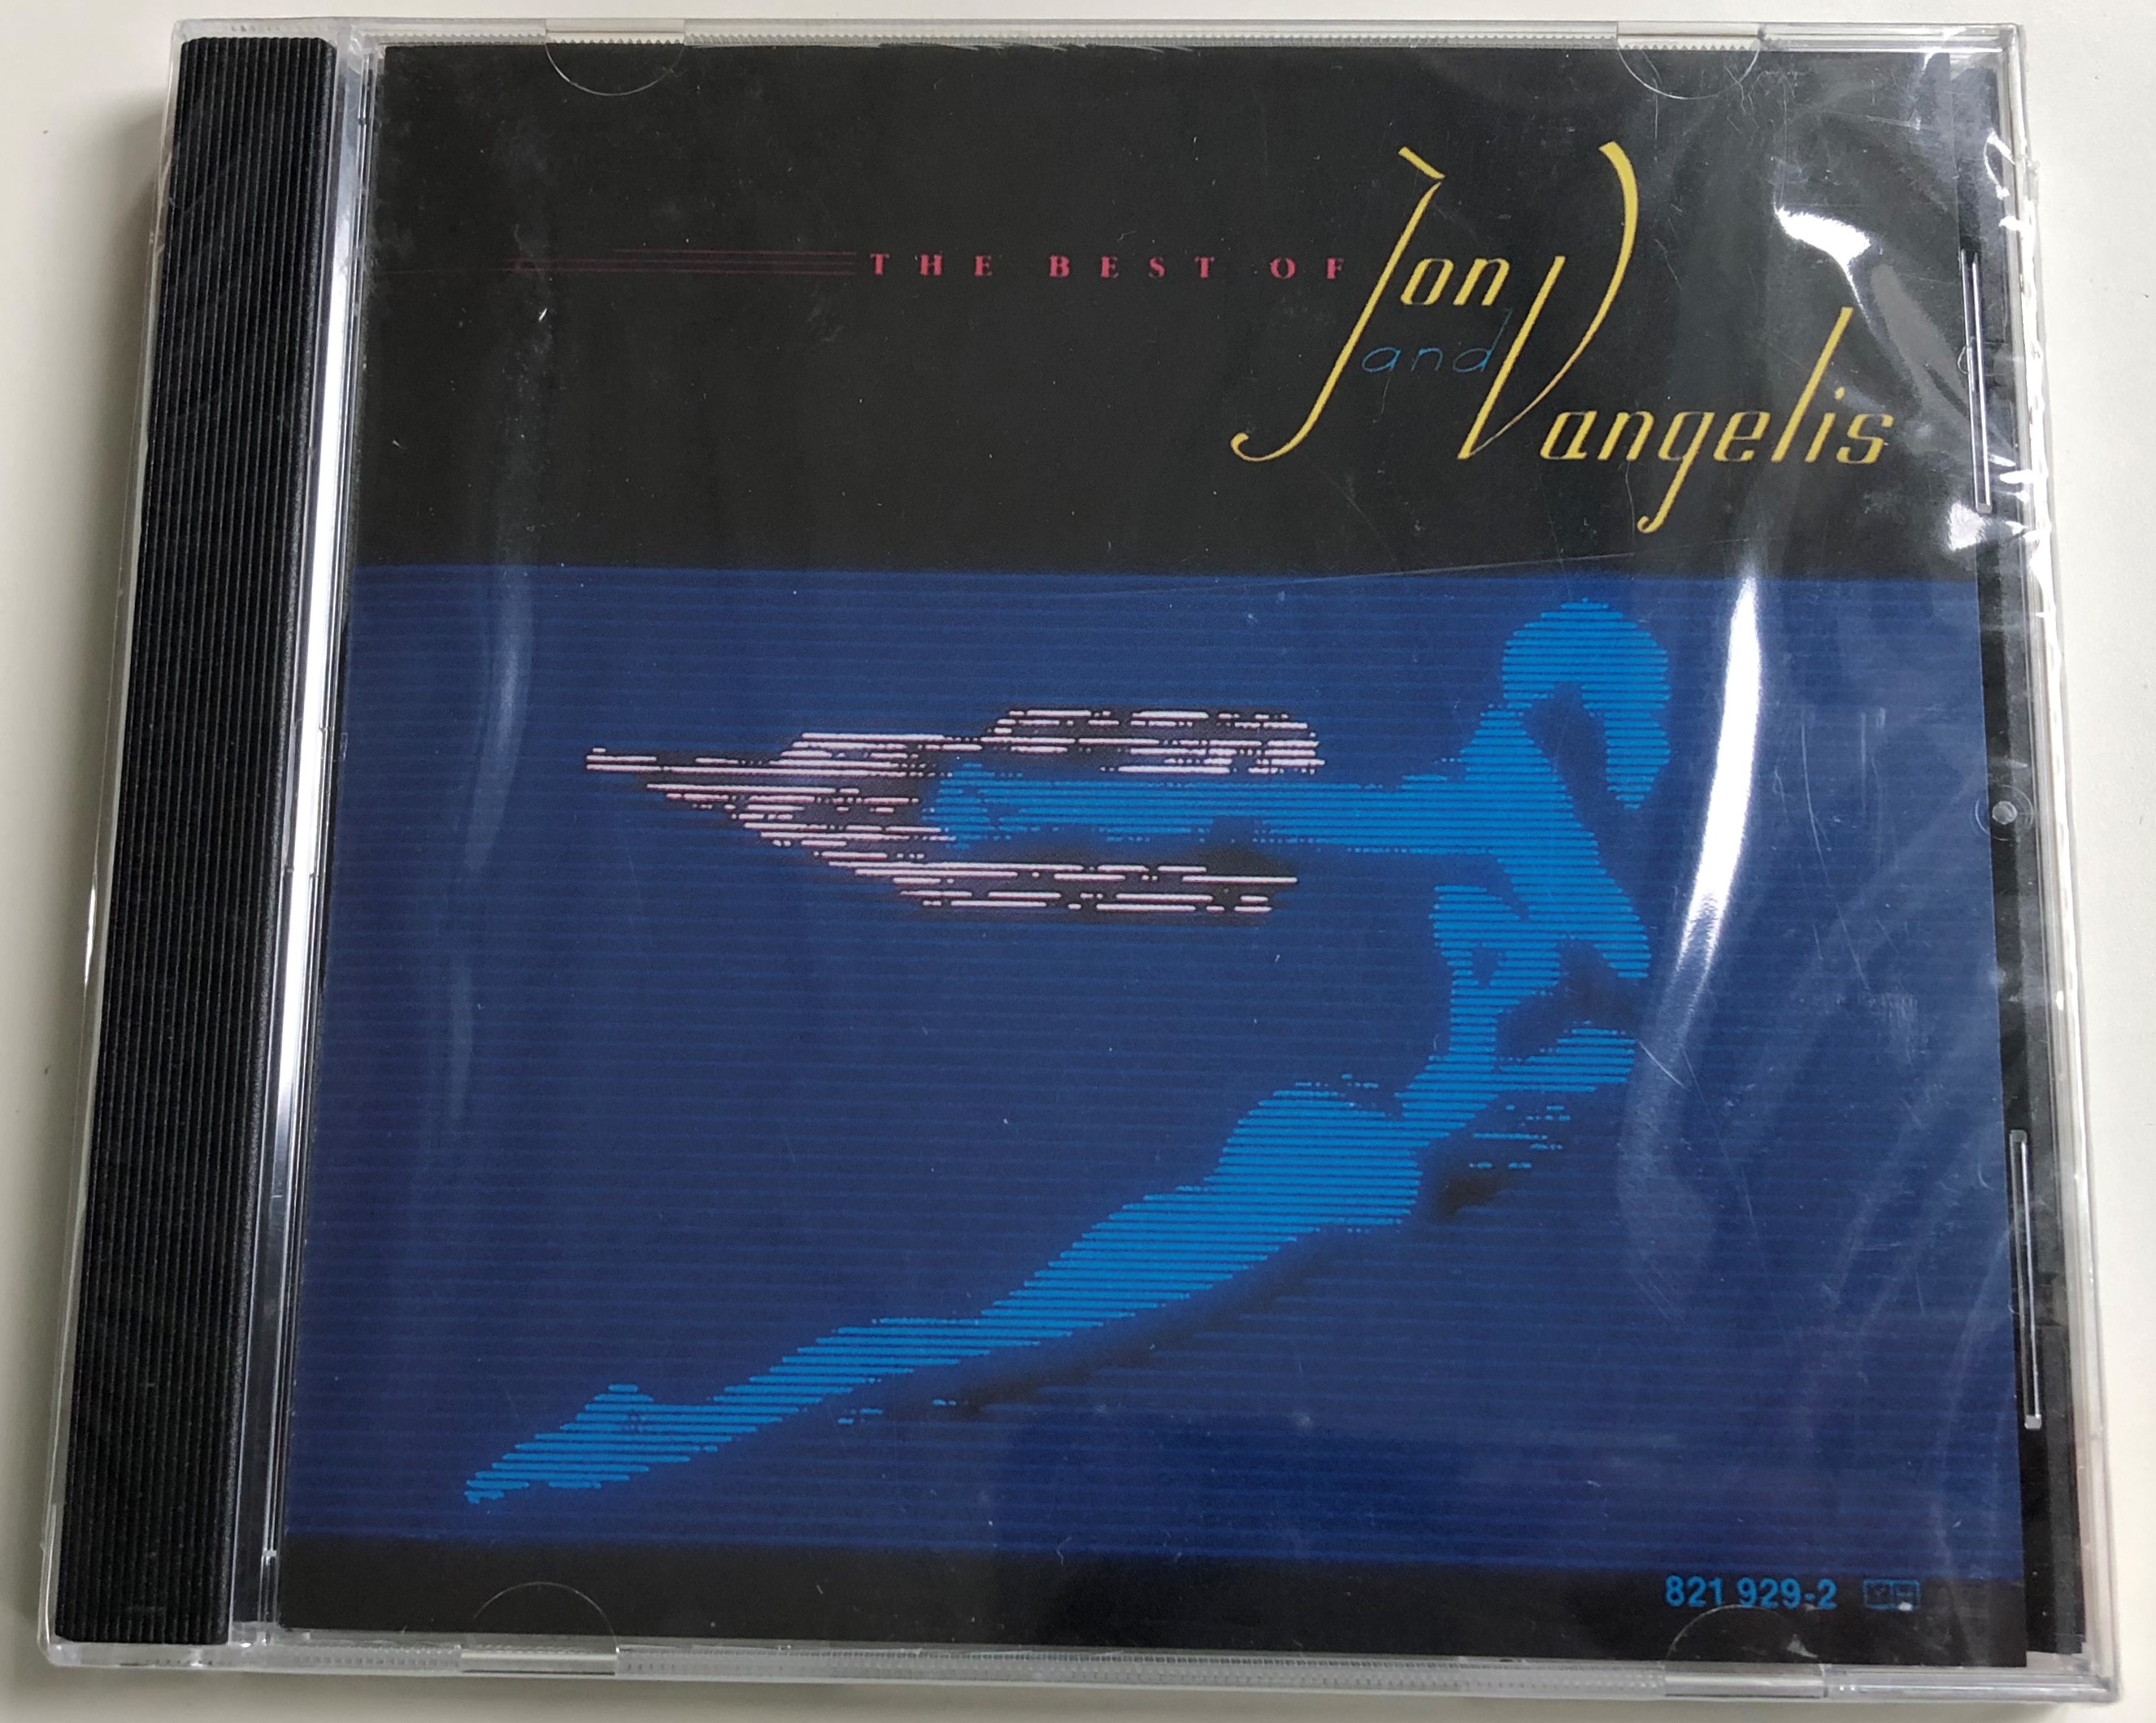 the-best-of-jon-and-vangelis-polydor-audio-cd-1984-821-929-2-1-.jpg